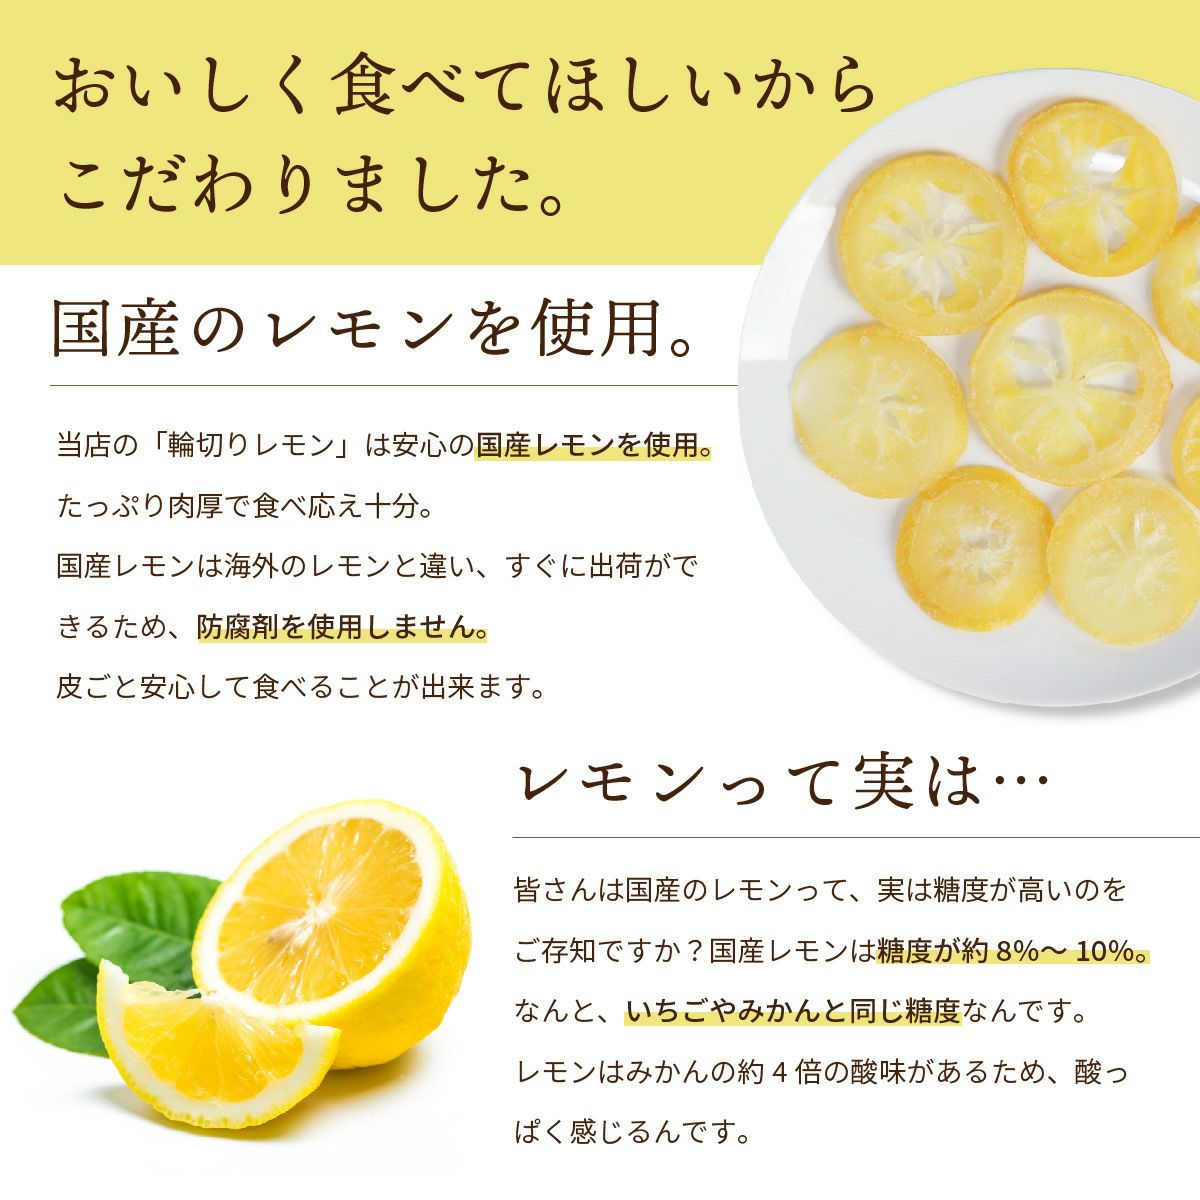 ドライフルーツ 国産 輪切り レモン 200g 特長4